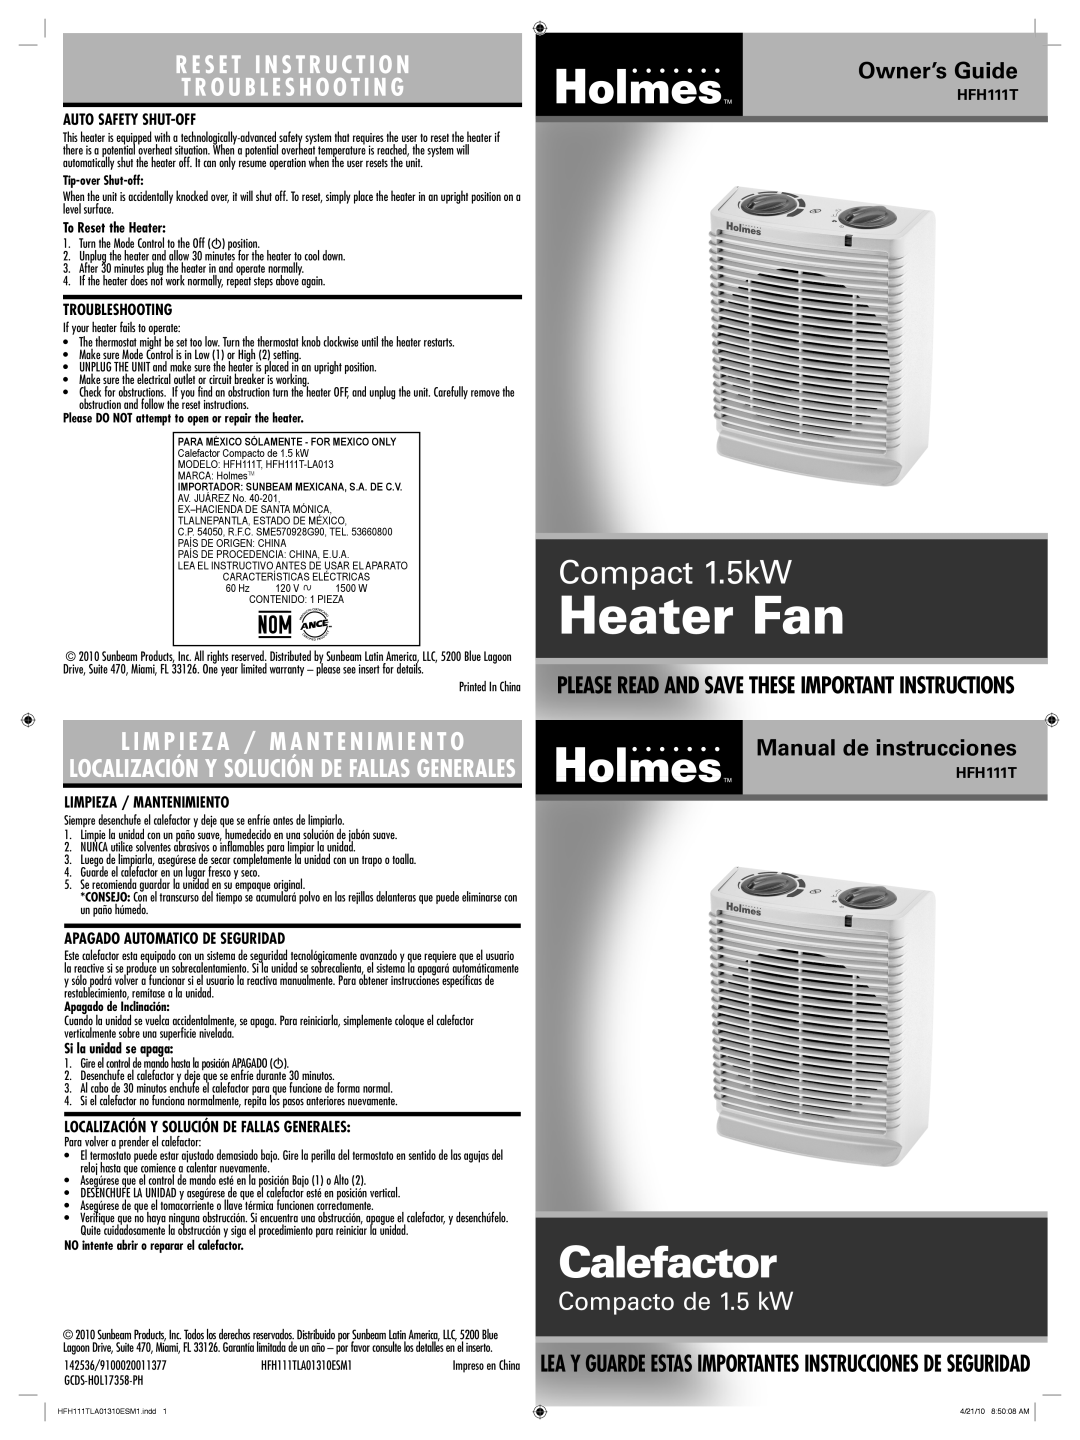 Holmes HFH111T warranty Heater Fan, Calefactor, Compact 1.5kW, Compacto de 1.5 kW, R E S E T I N S T R U C T I O N 